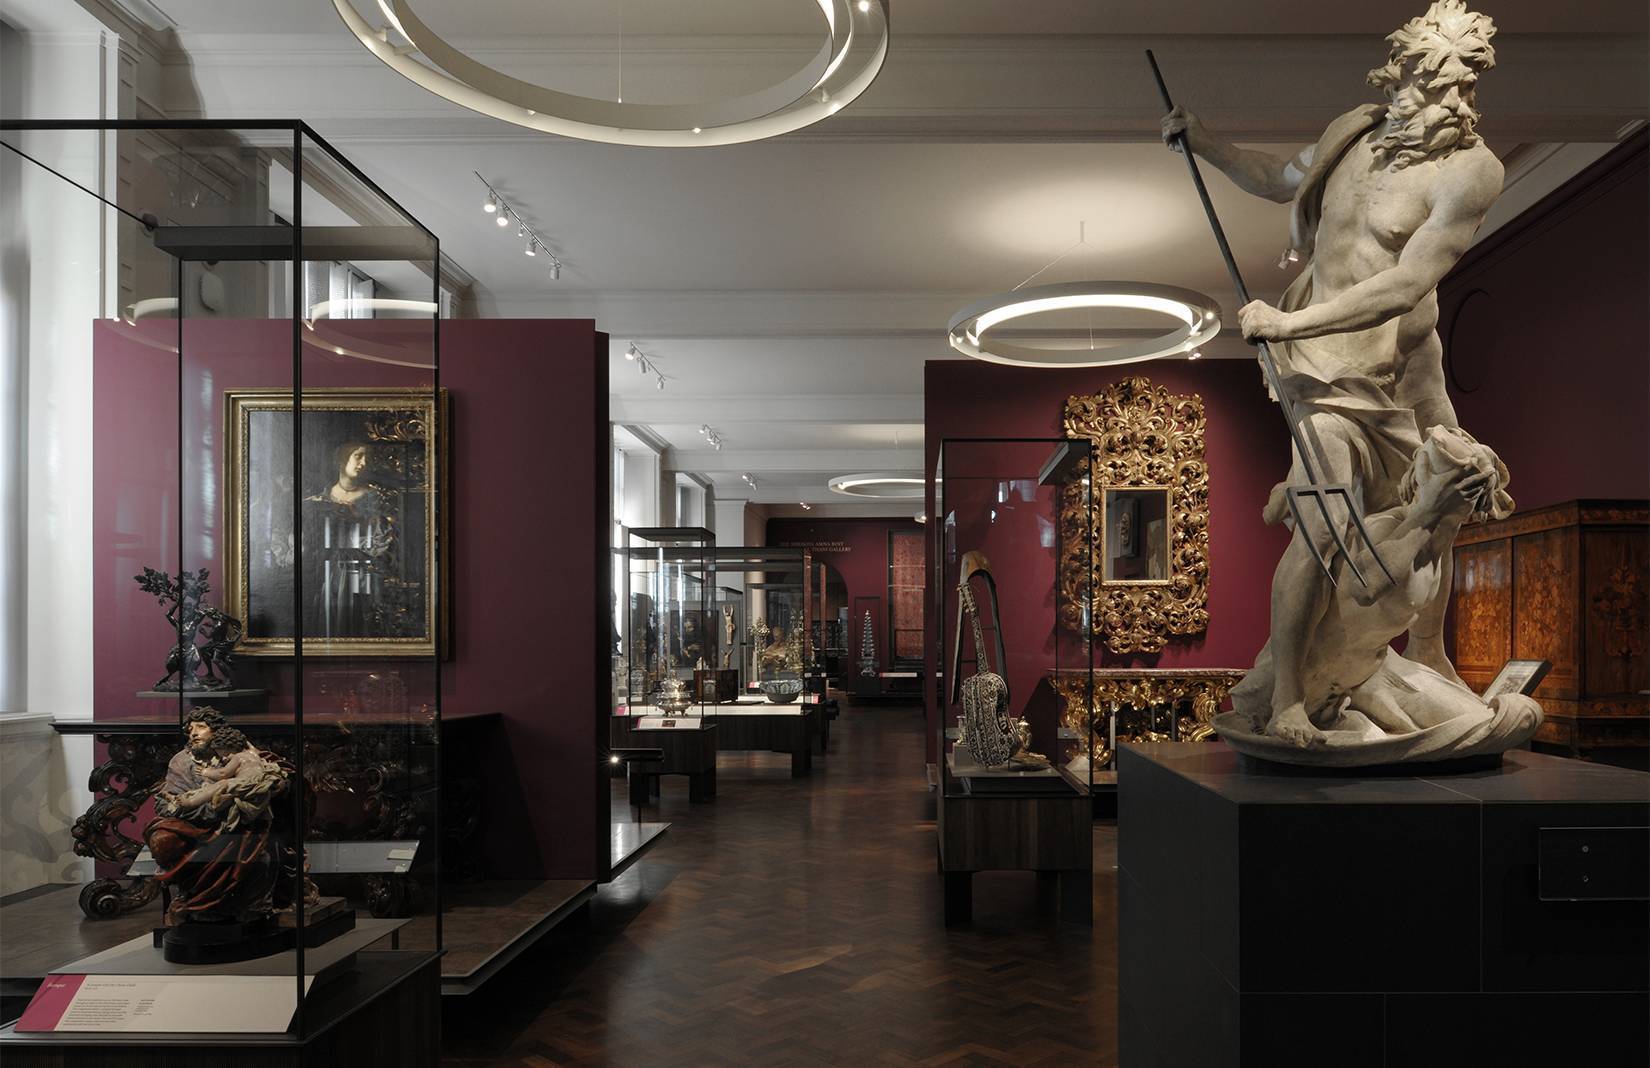 Музей виктории и альберта, лондон — официальный сайт, выставки, как добраться, отзывы, отели рядом на туристер.ру